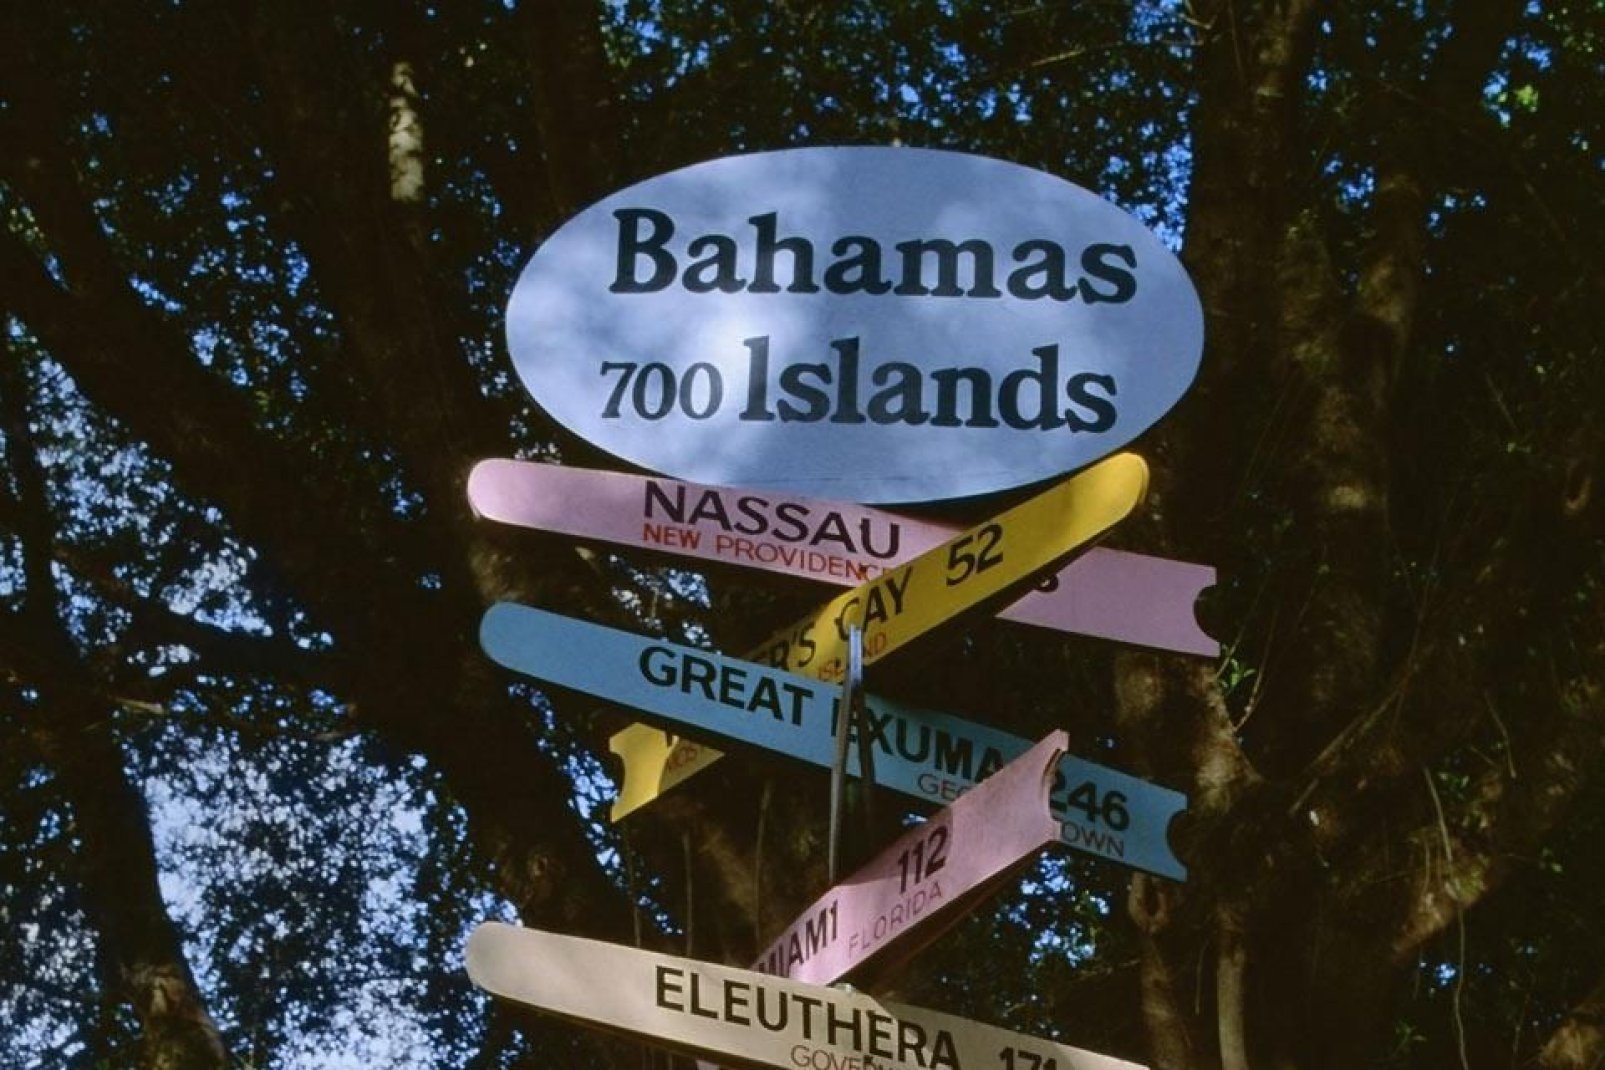 Les Bahamas regroupent un grand nombre d'île dont Grand Bahama.